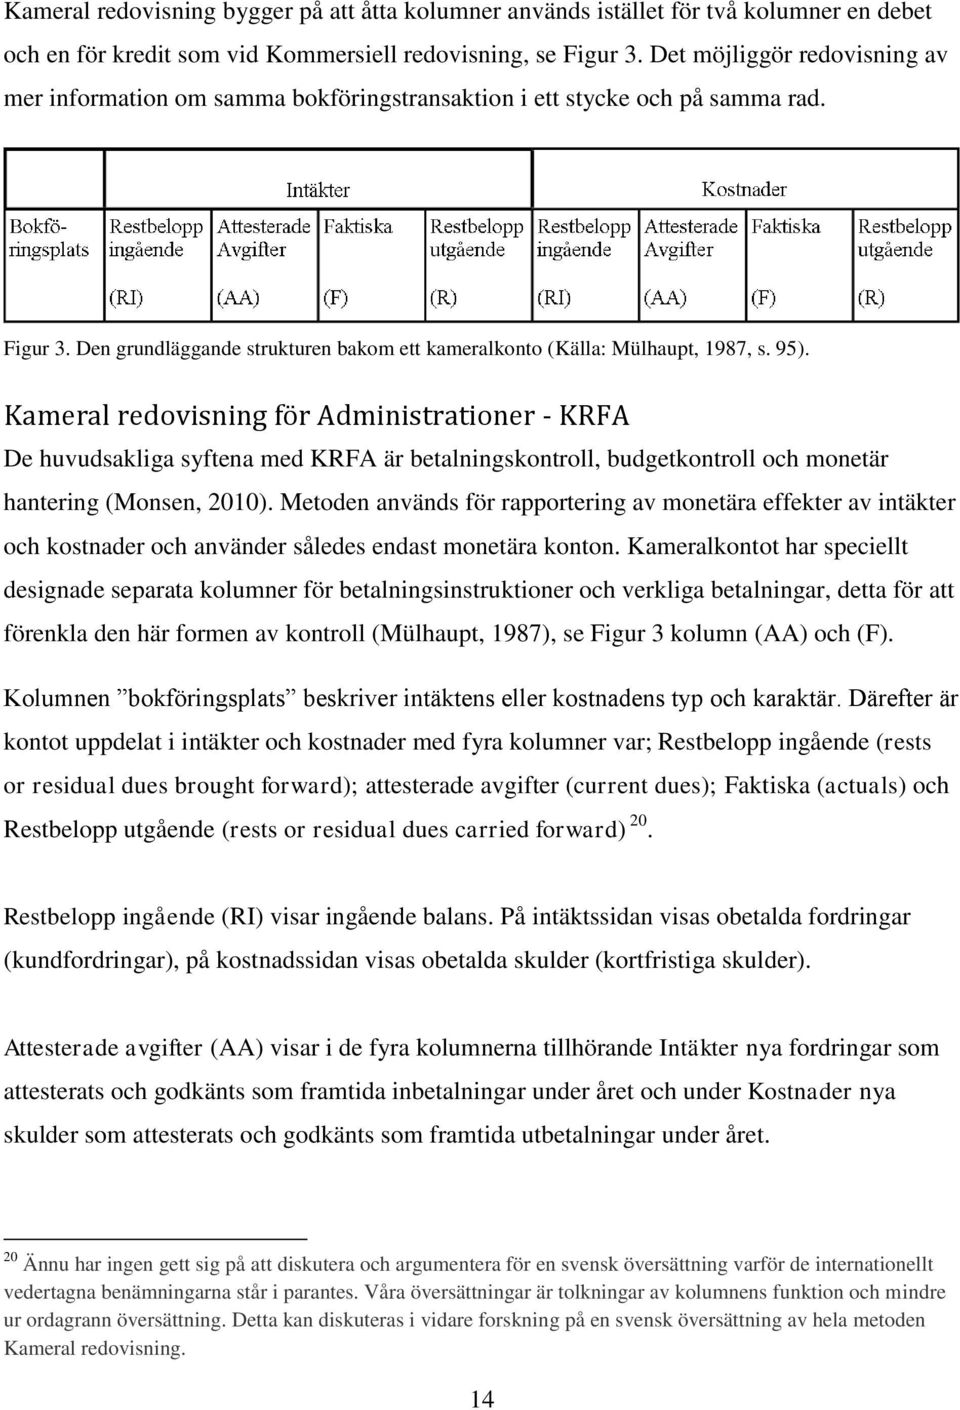 Kameral redovisning för Administrationer - KRFA De huvudsakliga syftena med KRFA är betalningskontroll, budgetkontroll och monetär hantering (Monsen, 2010).